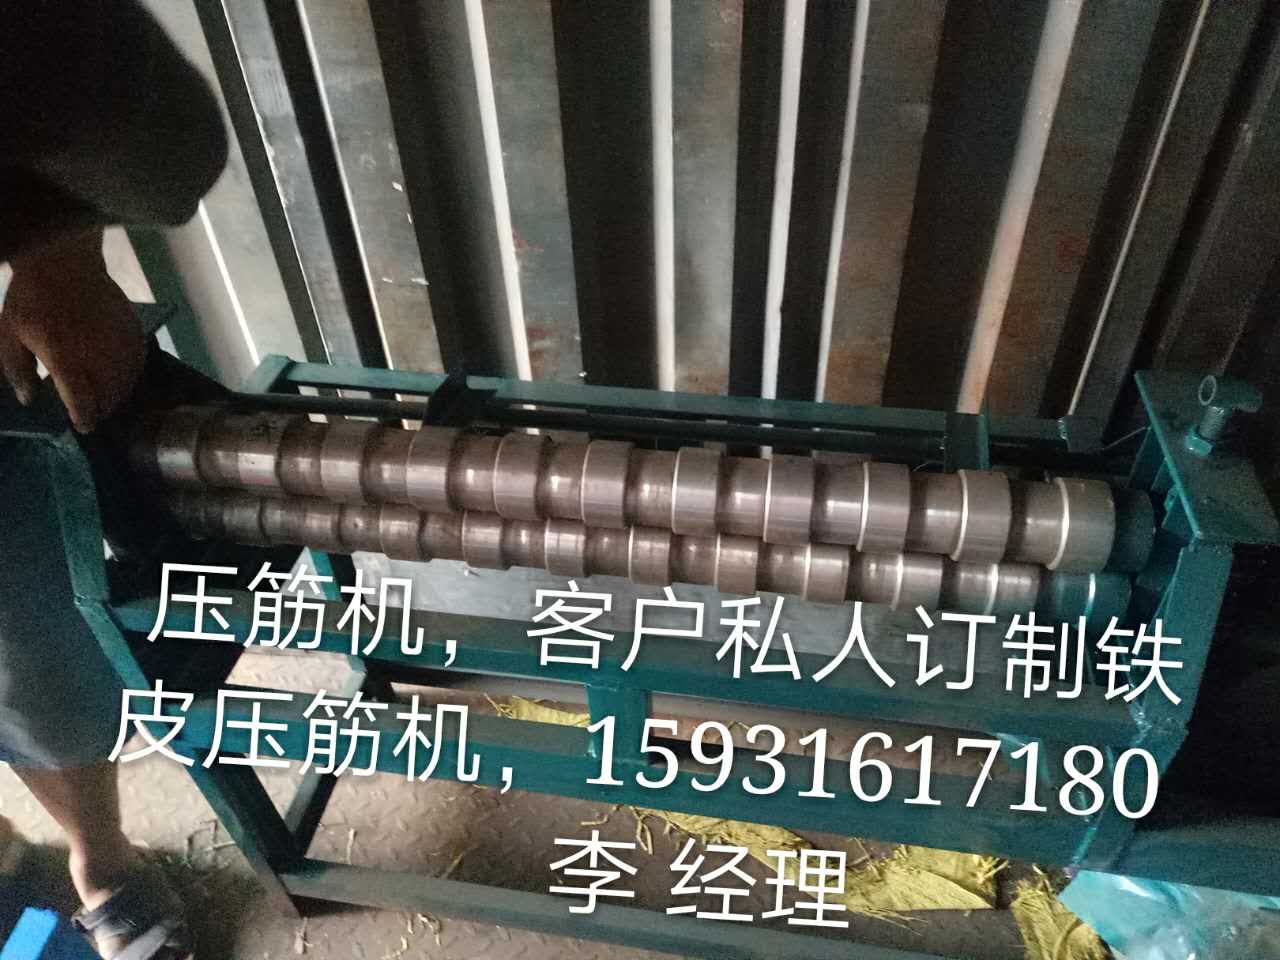 重庆五线压筋机铁皮压槽机手摇压边机电动卷圆机厂家直销精细加工